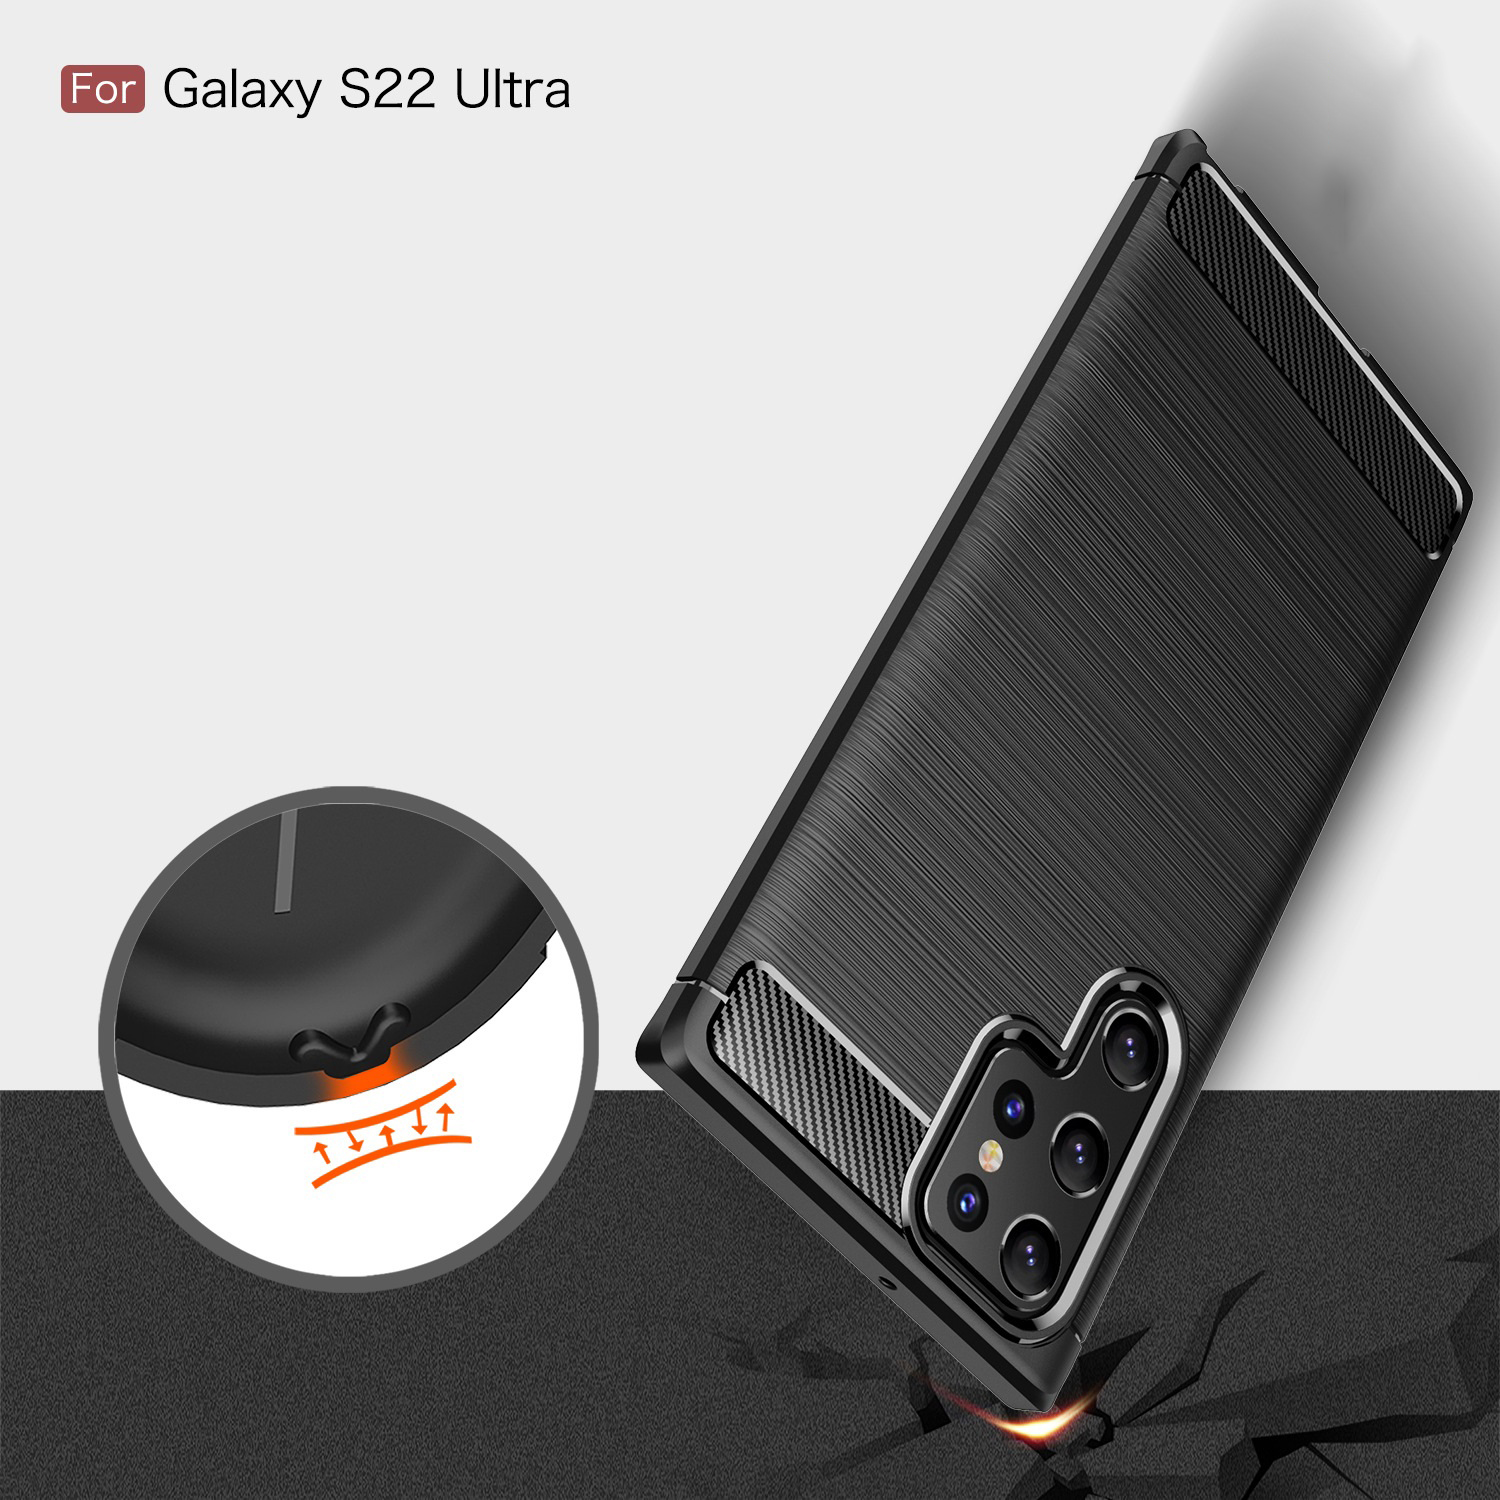 Ốp Lưng Chống Sốc Cho SamSung Galaxy S22 Ultra, S22 Plus Hiệu RUGGED ARMOR Vân Sợi Carbon, Bảo Vệ Camera Sau - Hàng Chính Hãng